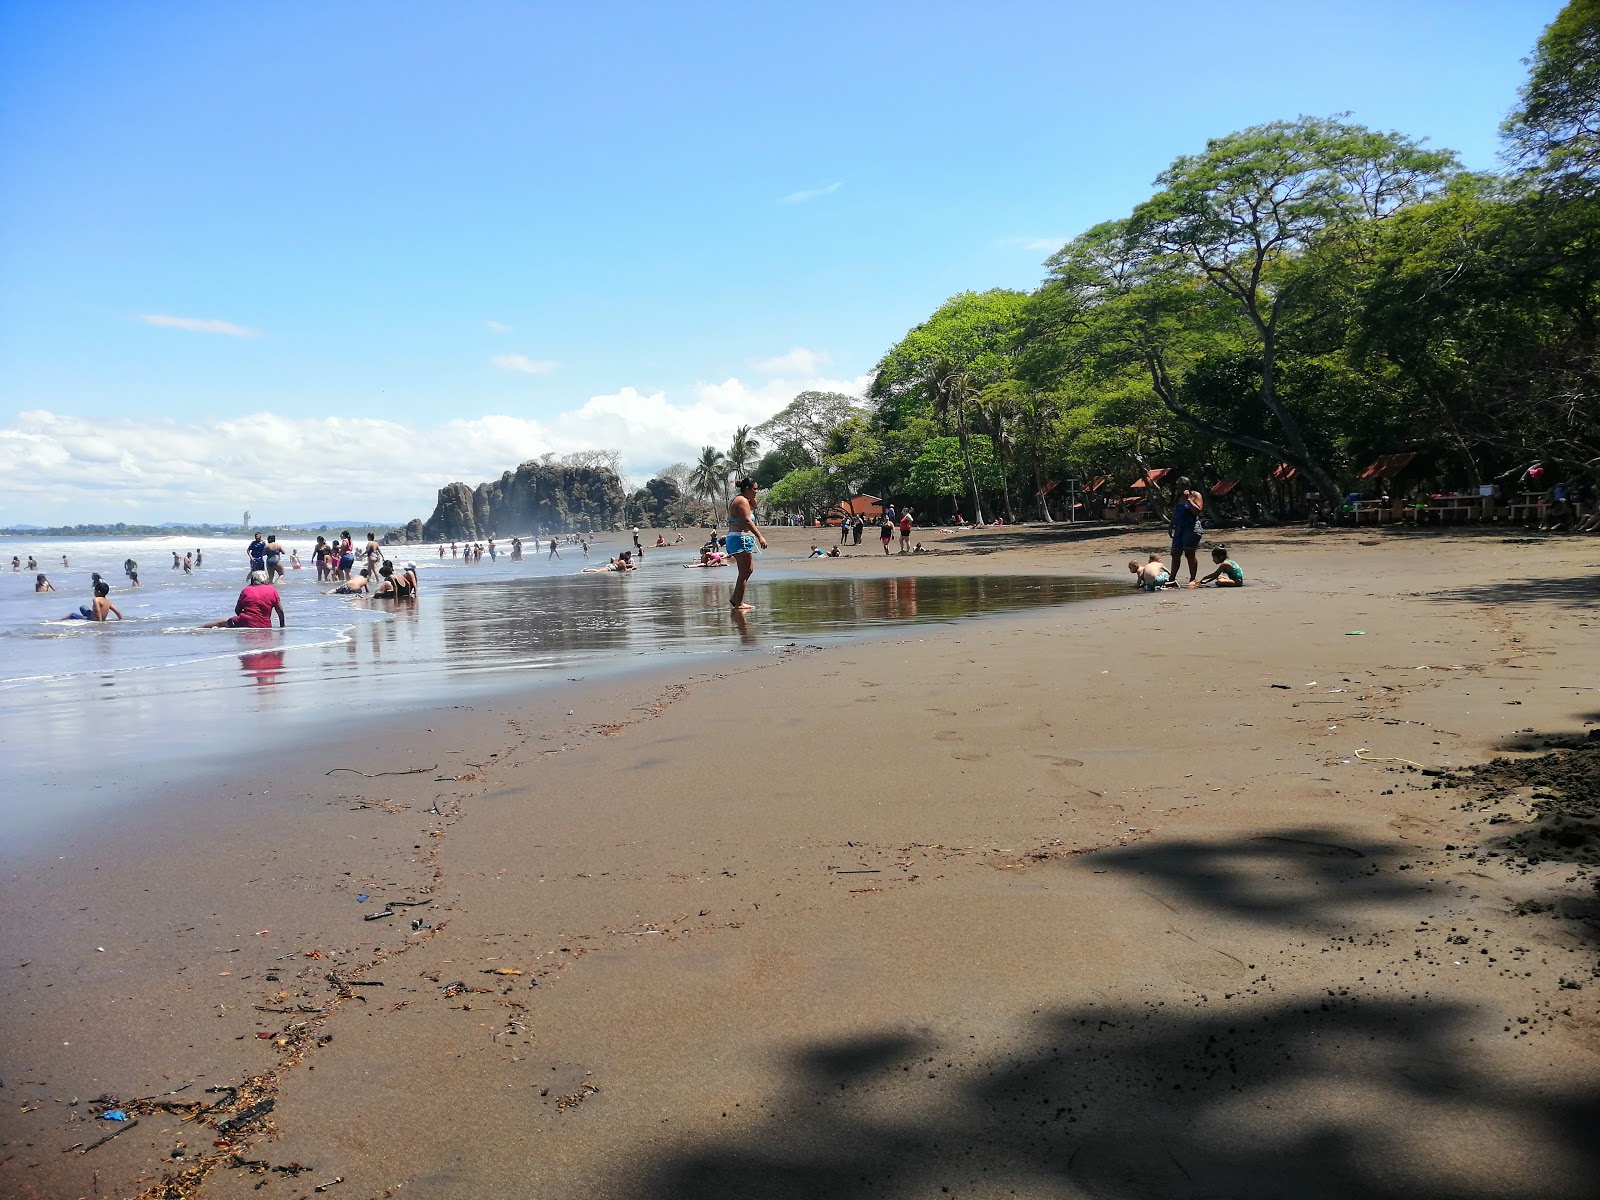 Playas De Dona Ana'in fotoğrafı geniş plaj ile birlikte